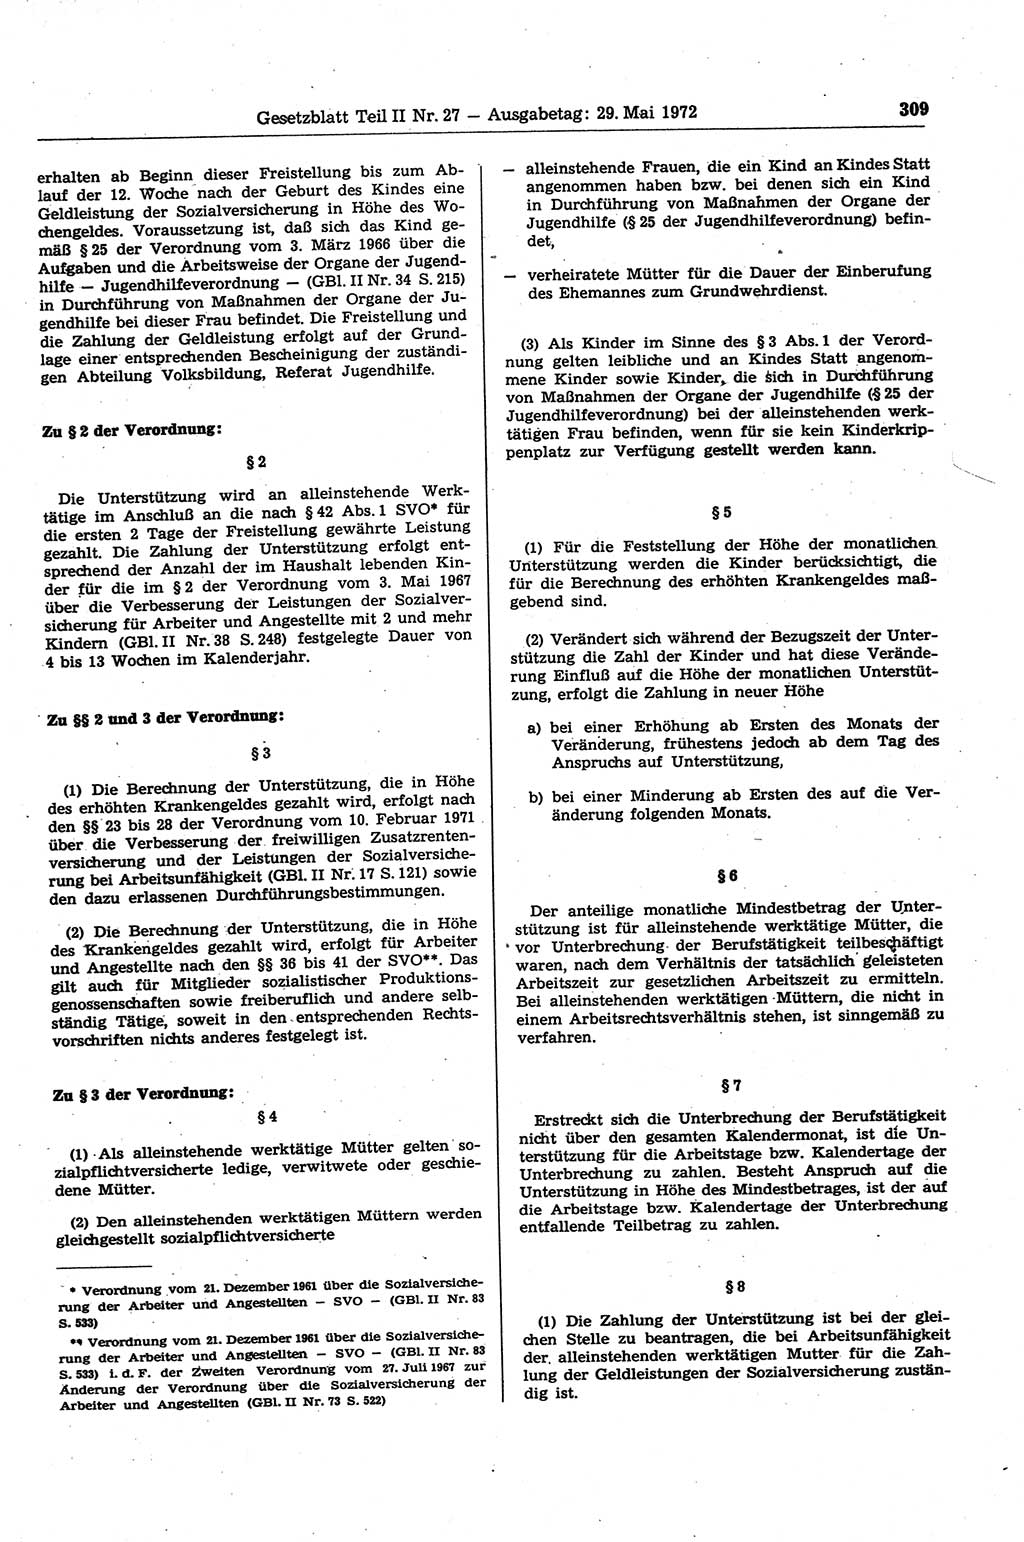 Gesetzblatt (GBl.) der Deutschen Demokratischen Republik (DDR) Teil ⅠⅠ 1972, Seite 309 (GBl. DDR ⅠⅠ 1972, S. 309)